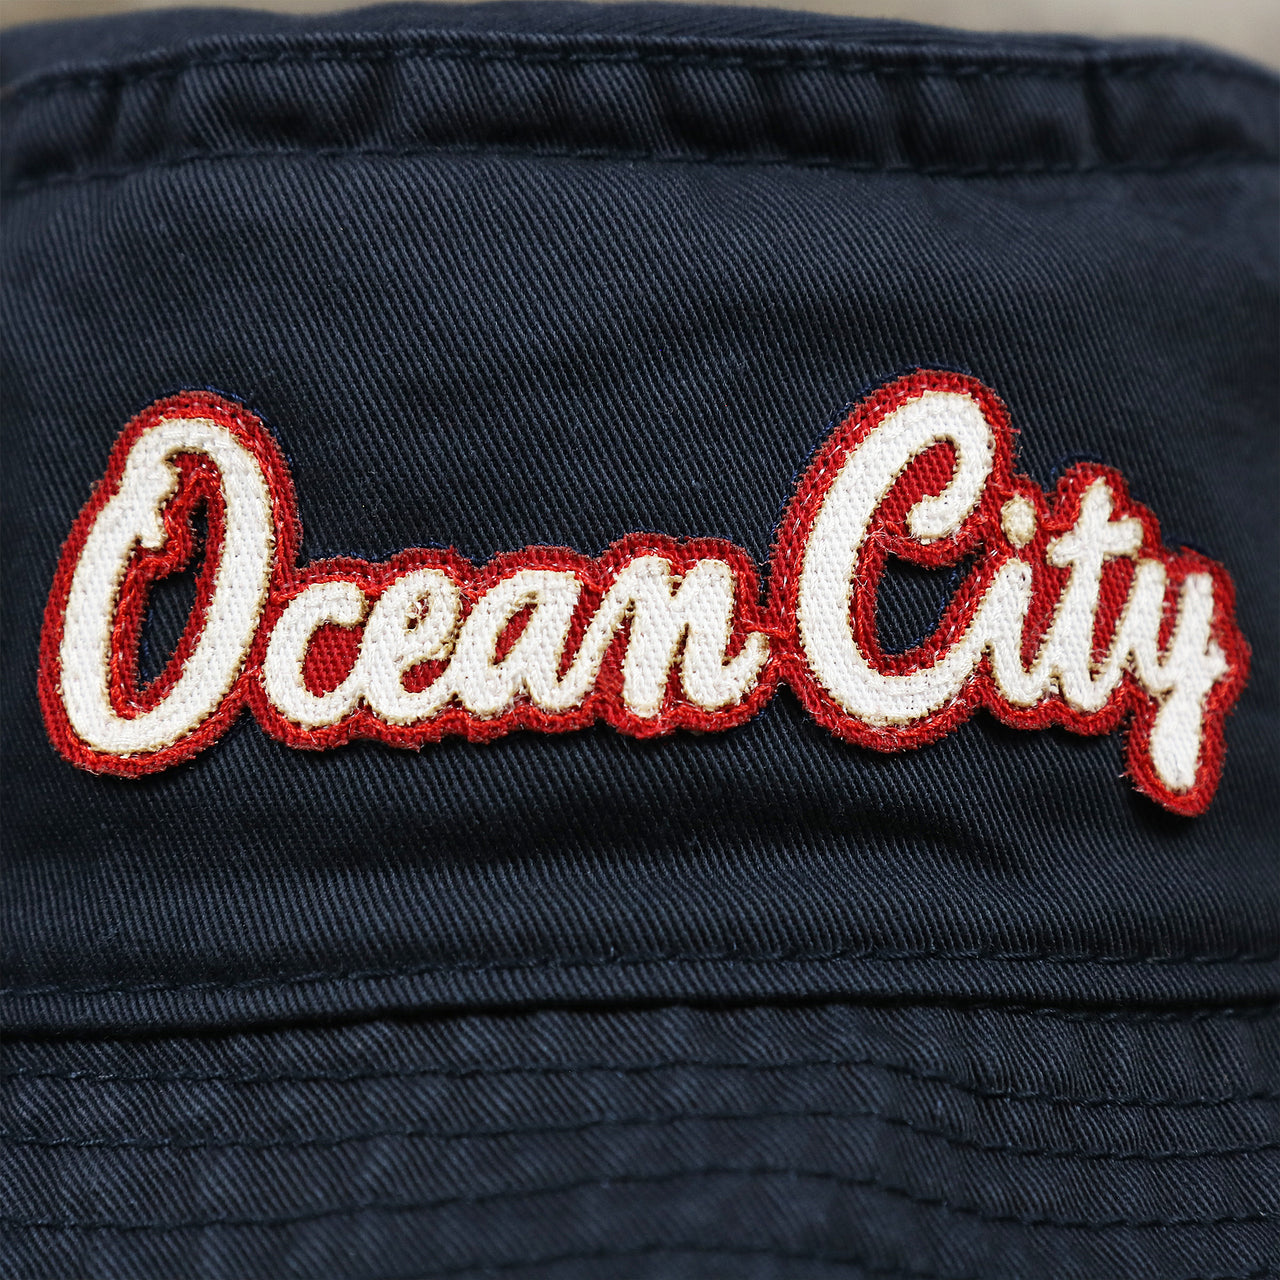 The Ocean City Wordmark on the White OCNJ Double Wordmark Red Outline Bucket Hat | Navy Bucket Hat